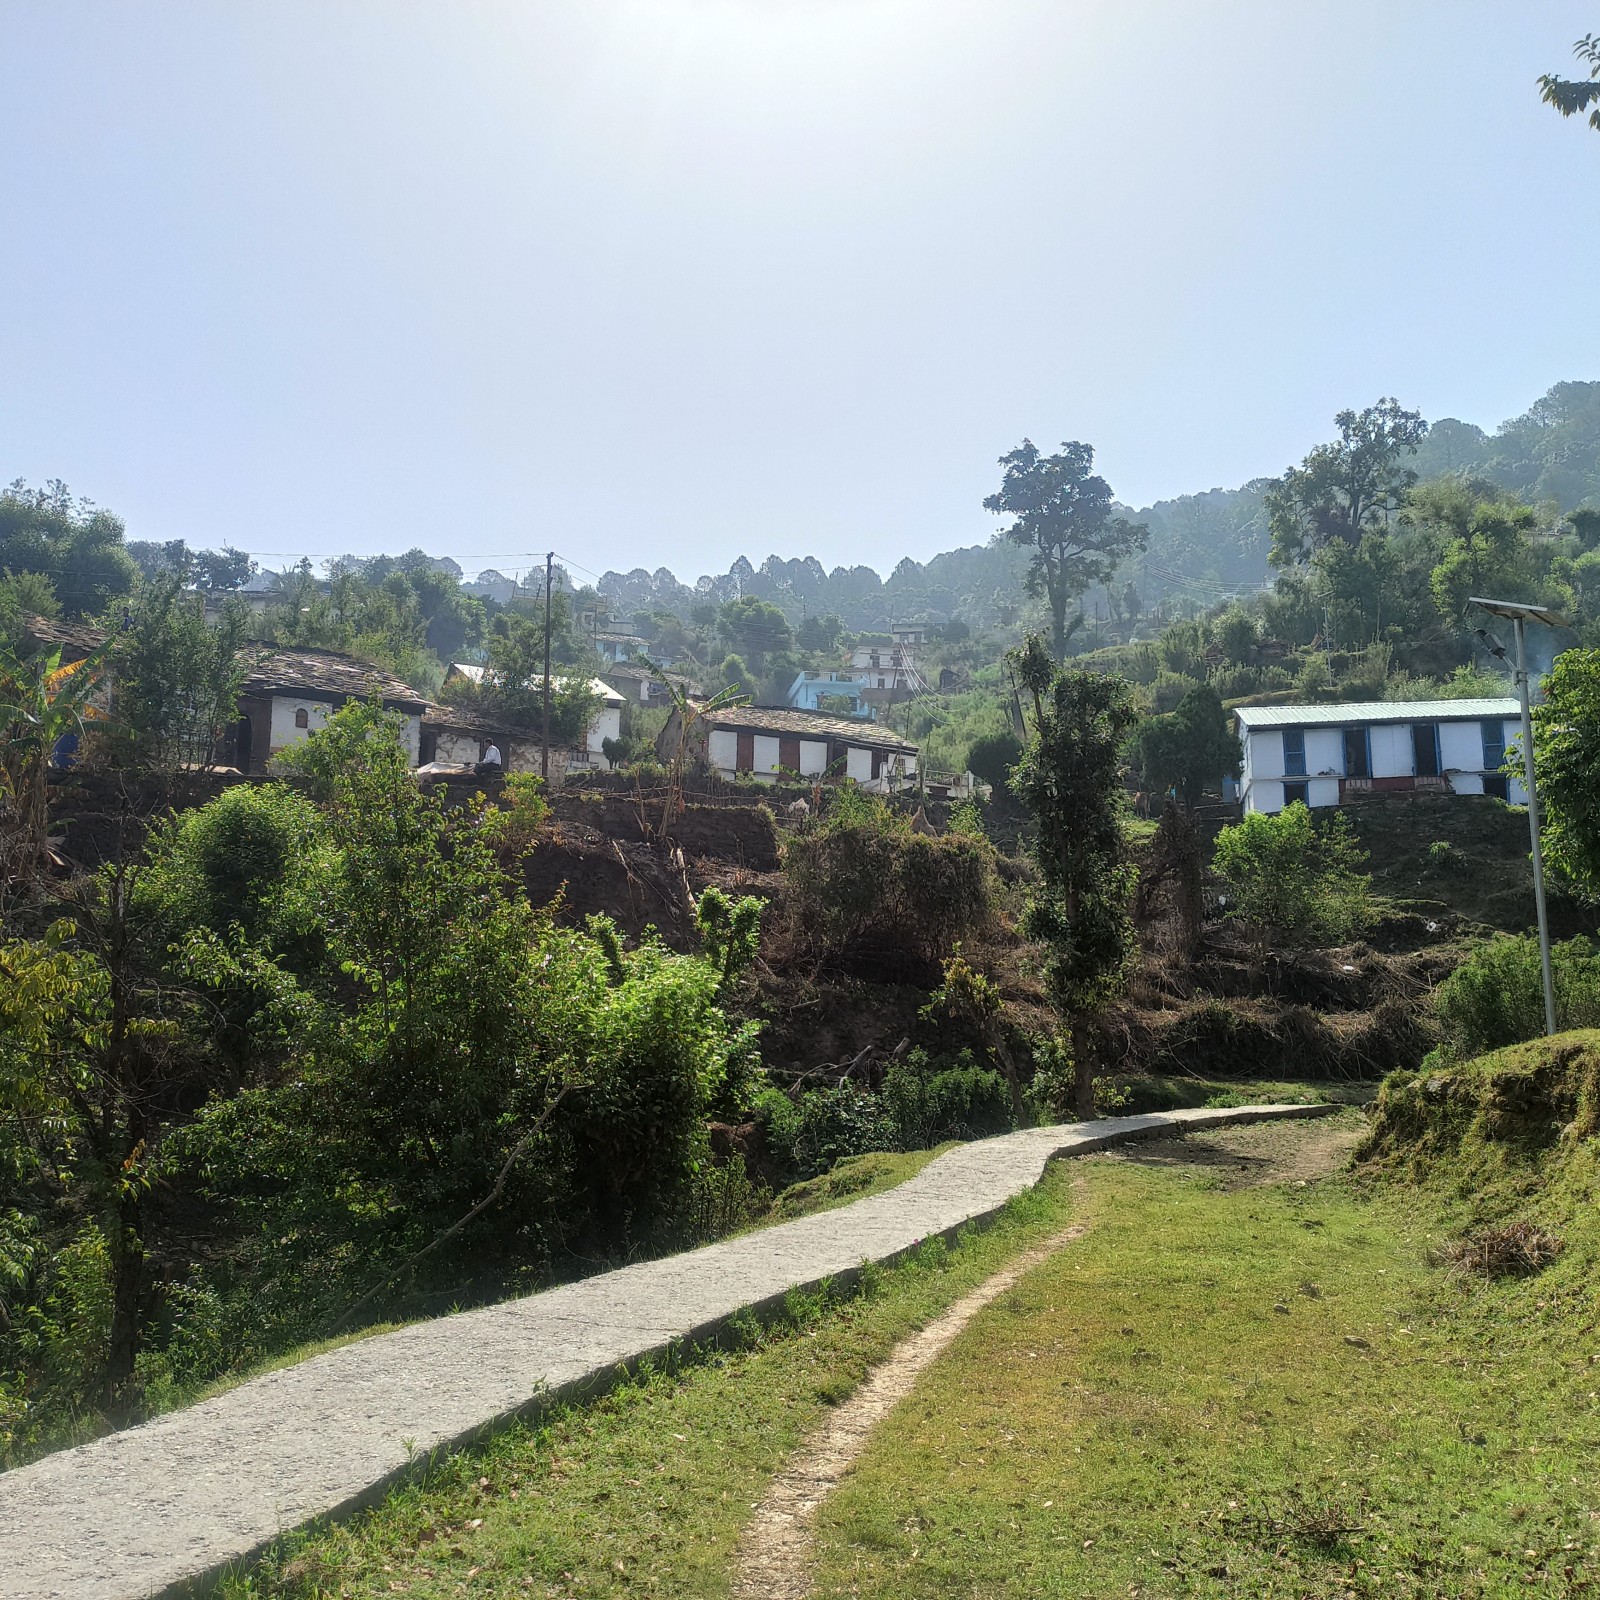 Pantgaon village, Almora